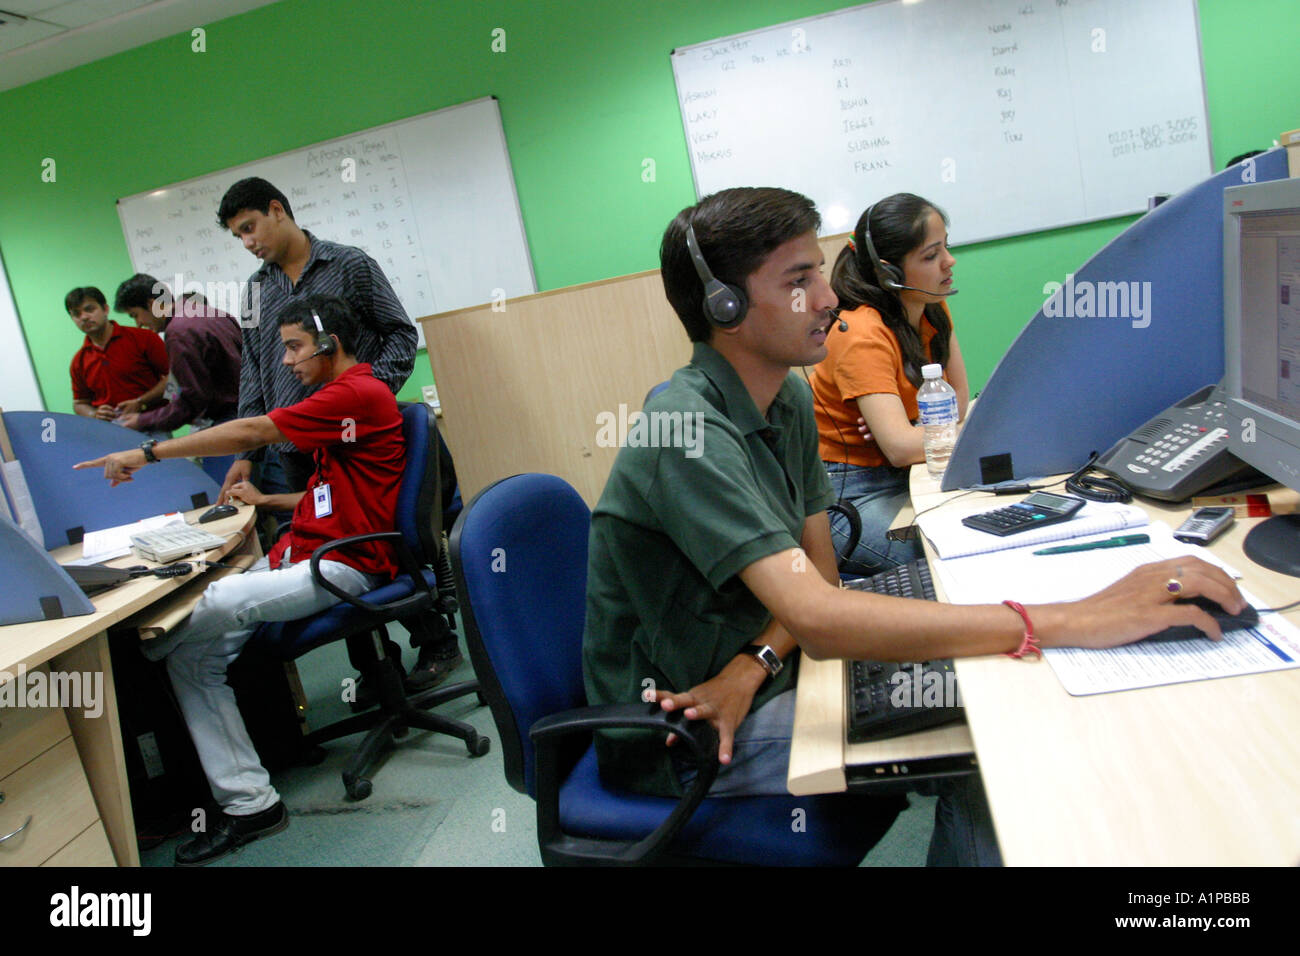 Indianer arbeiten in einem Callcenter, wo Geschäft von westlichen Firmen in Neu-Delhi in Indien ausgelagert ist. Stockfoto